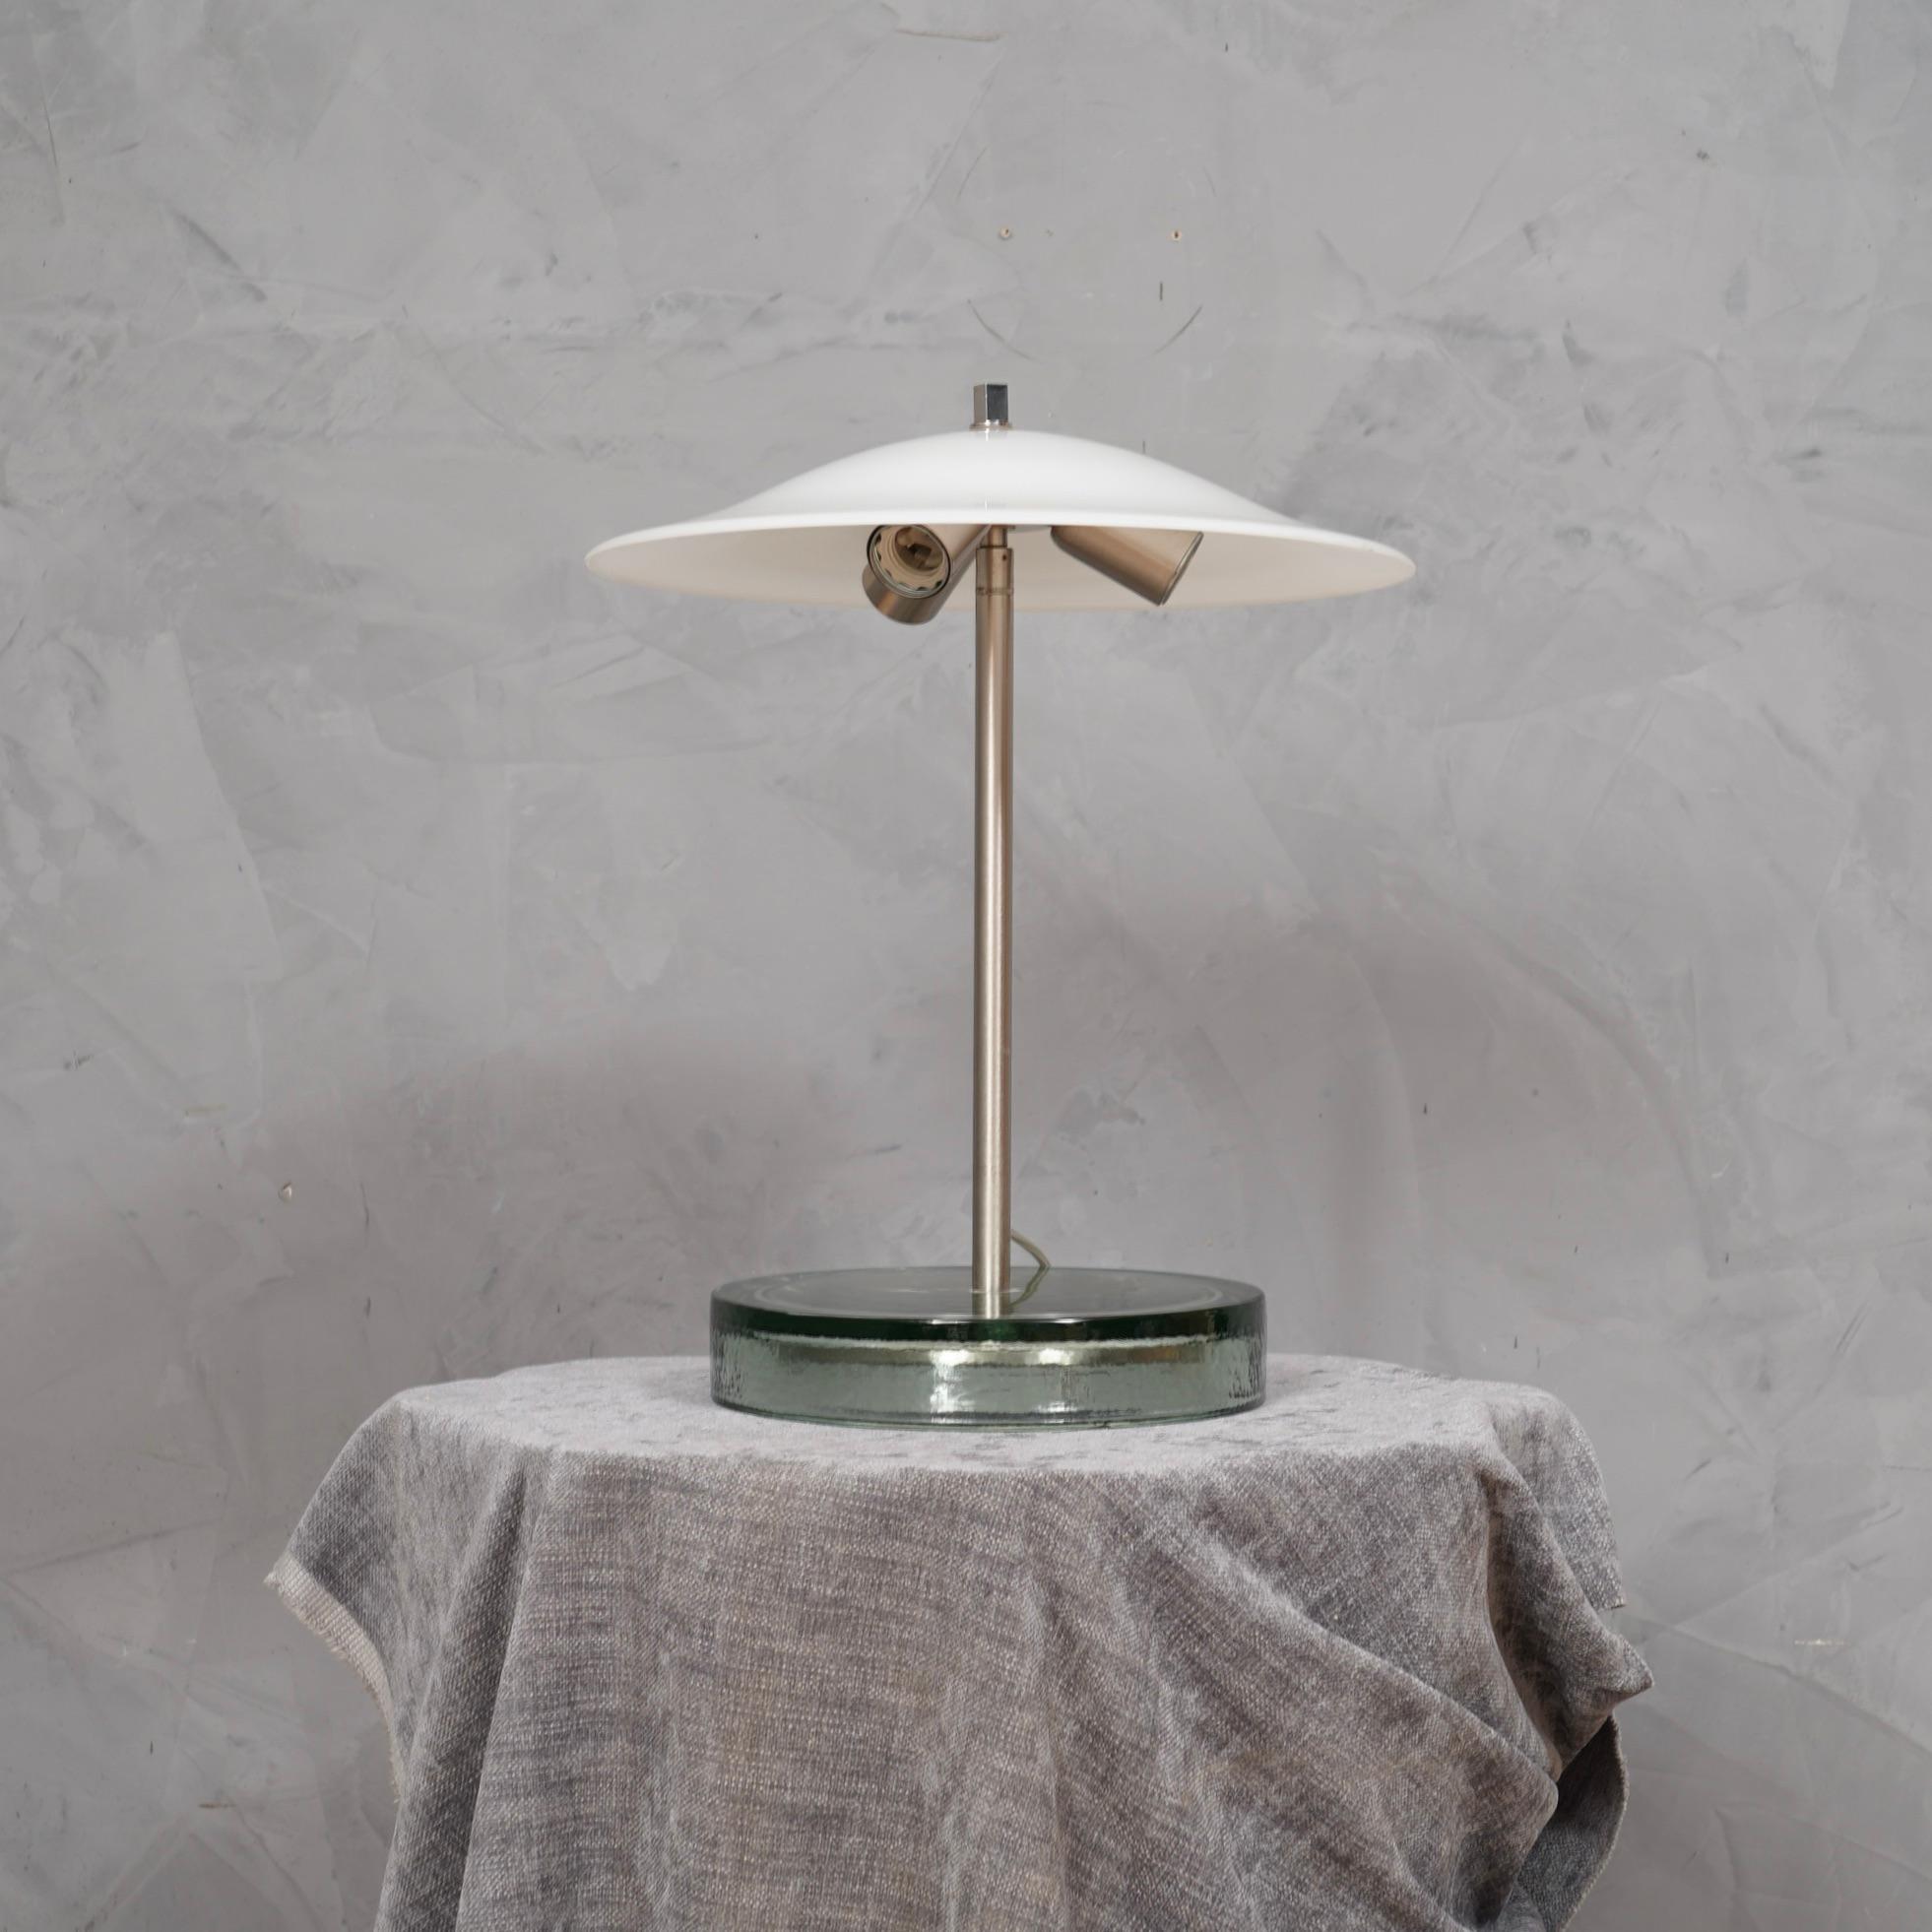 Ein unverwechselbares Design für diese Tischlampen von Vistosi, sicherlich sehr elegant auf einem schönen Schreibtisch.

Die Lampe besteht aus einem großen, transparenten Glassockel, aus dem in der Mitte ein satinierter Stahlstiel herausragt, an dem